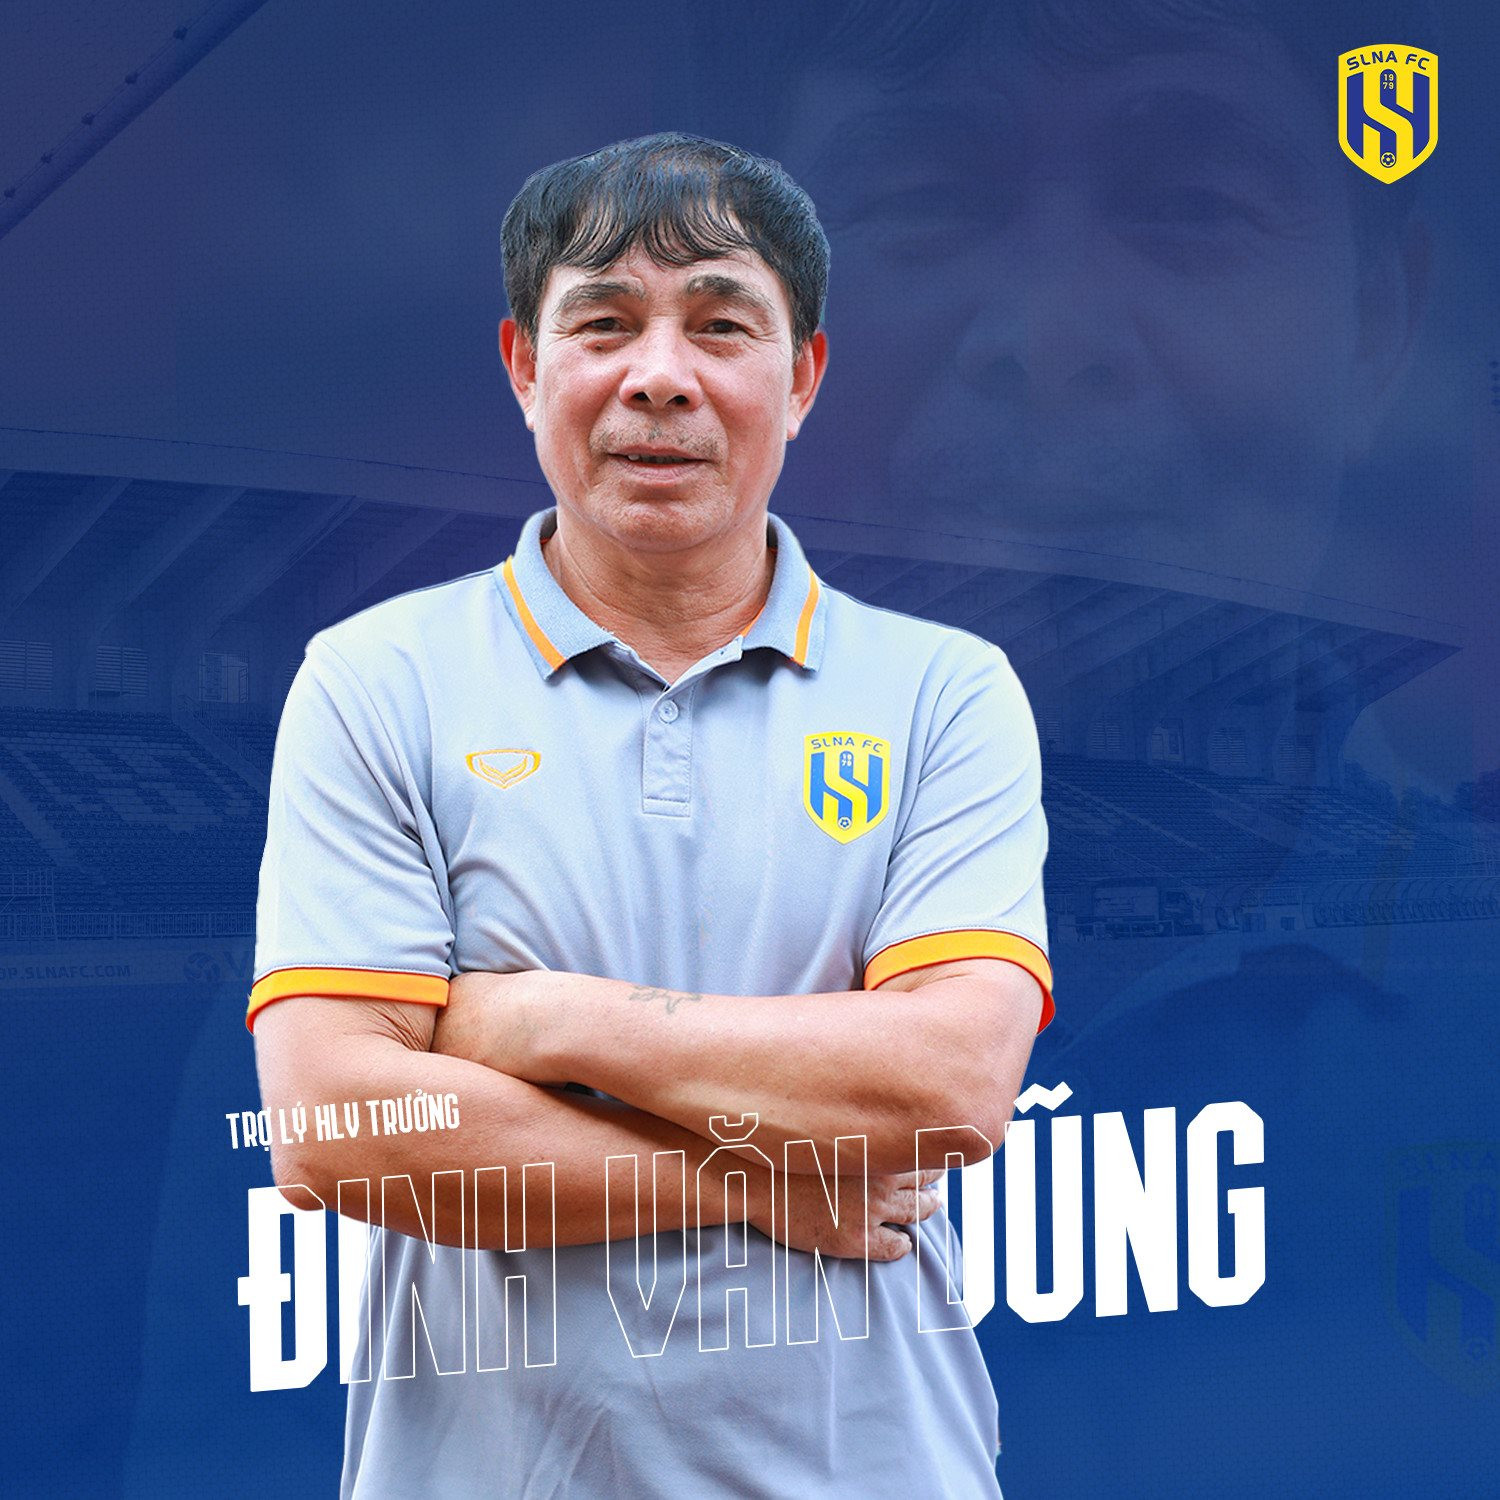 Huấn luyện viên Đinh Văn Dũng và 3 huấn luyện viên trẻ khác của Sông Lam Nghệ An nghỉ hưu theo chế độ với nhiều đóng góp cho đội bóng. Ảnh: Chung Lê